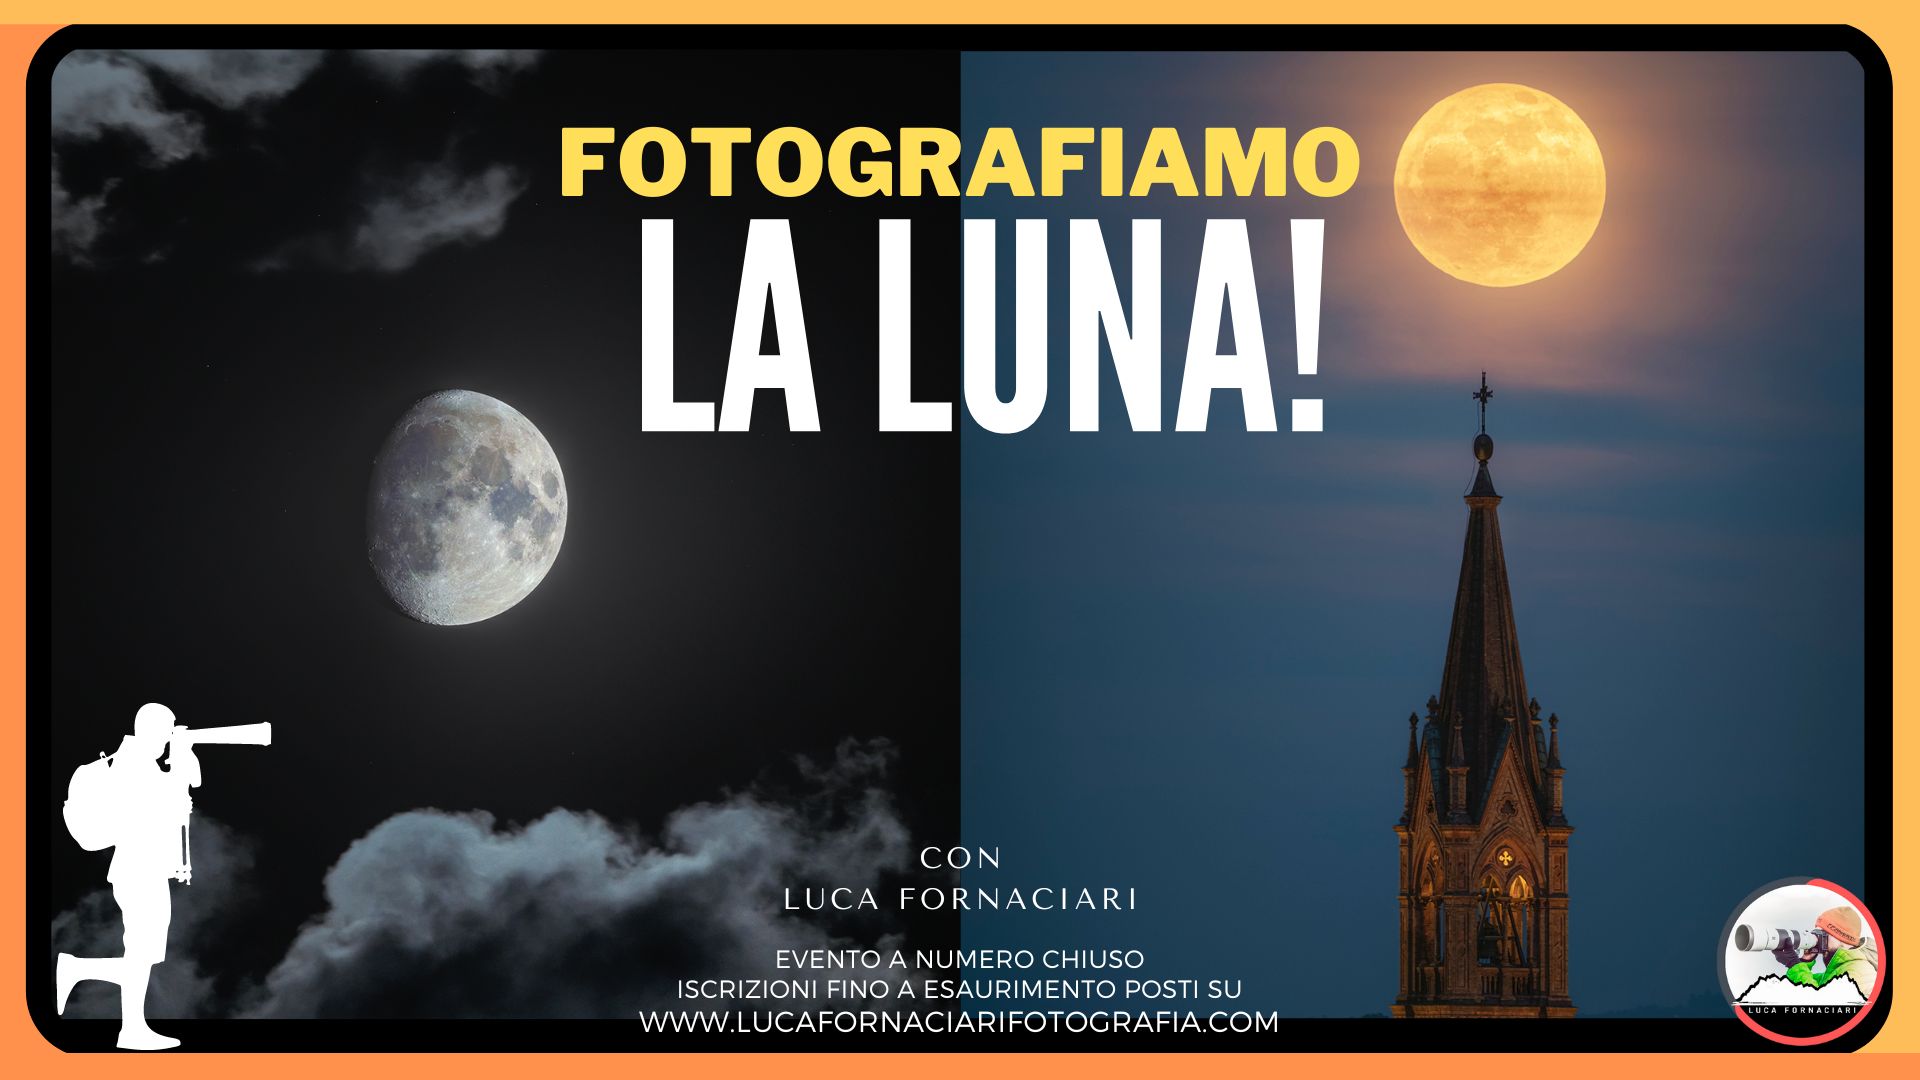 Fotografiamo la Luna: fotografia paesaggistica notturna Fotografiamo la Luna: fotografia notturna di paesaggio